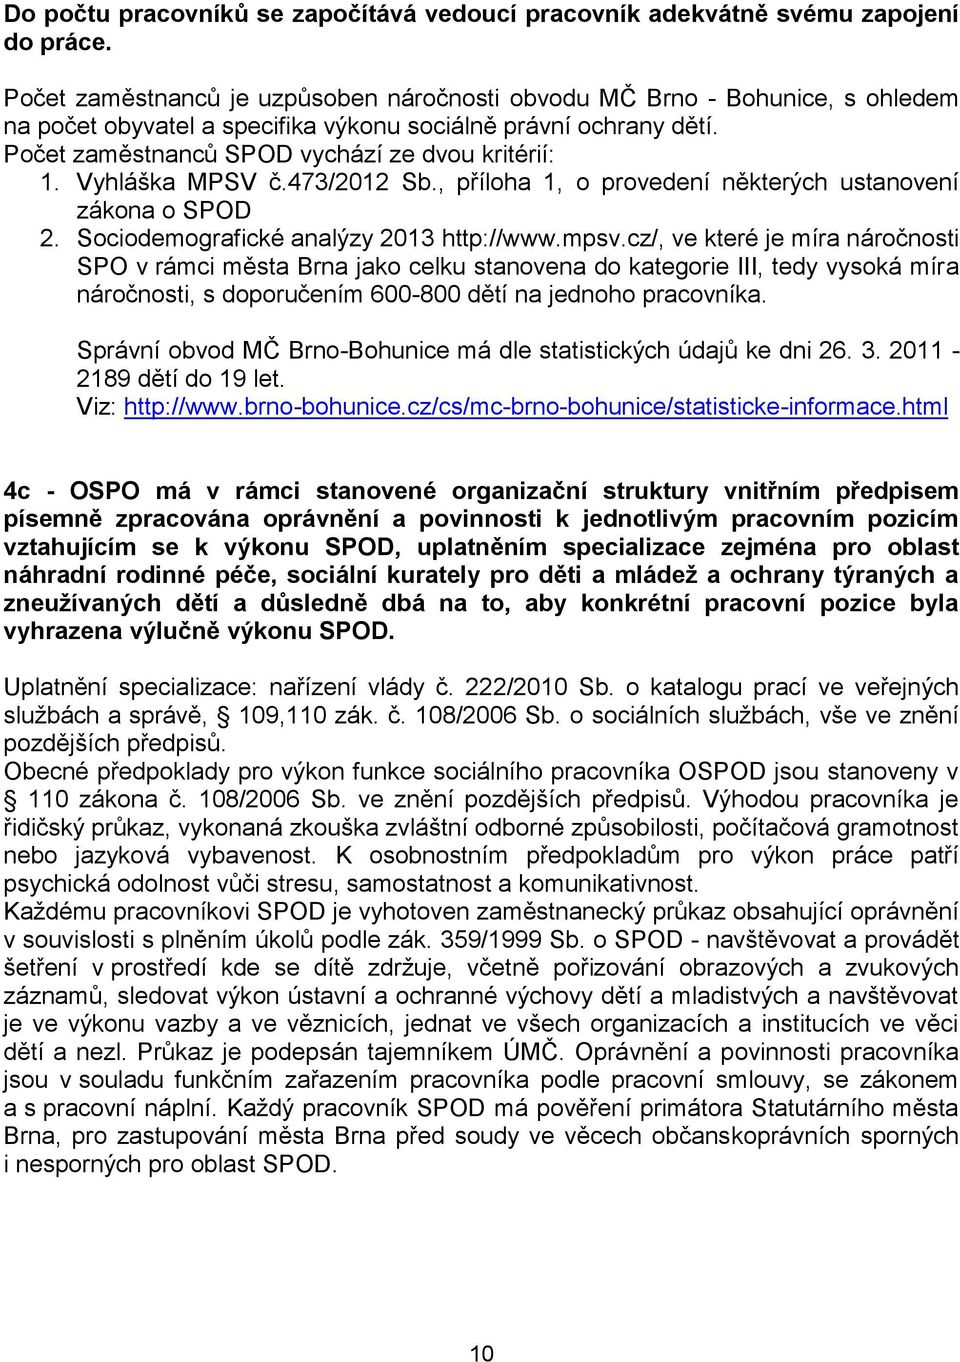 Vyhláška MPSV č.473/2012 Sb., příloha 1, o provedení některých ustanovení zákona o SPOD 2. Sociodemografické analýzy 2013 http://www.mpsv.